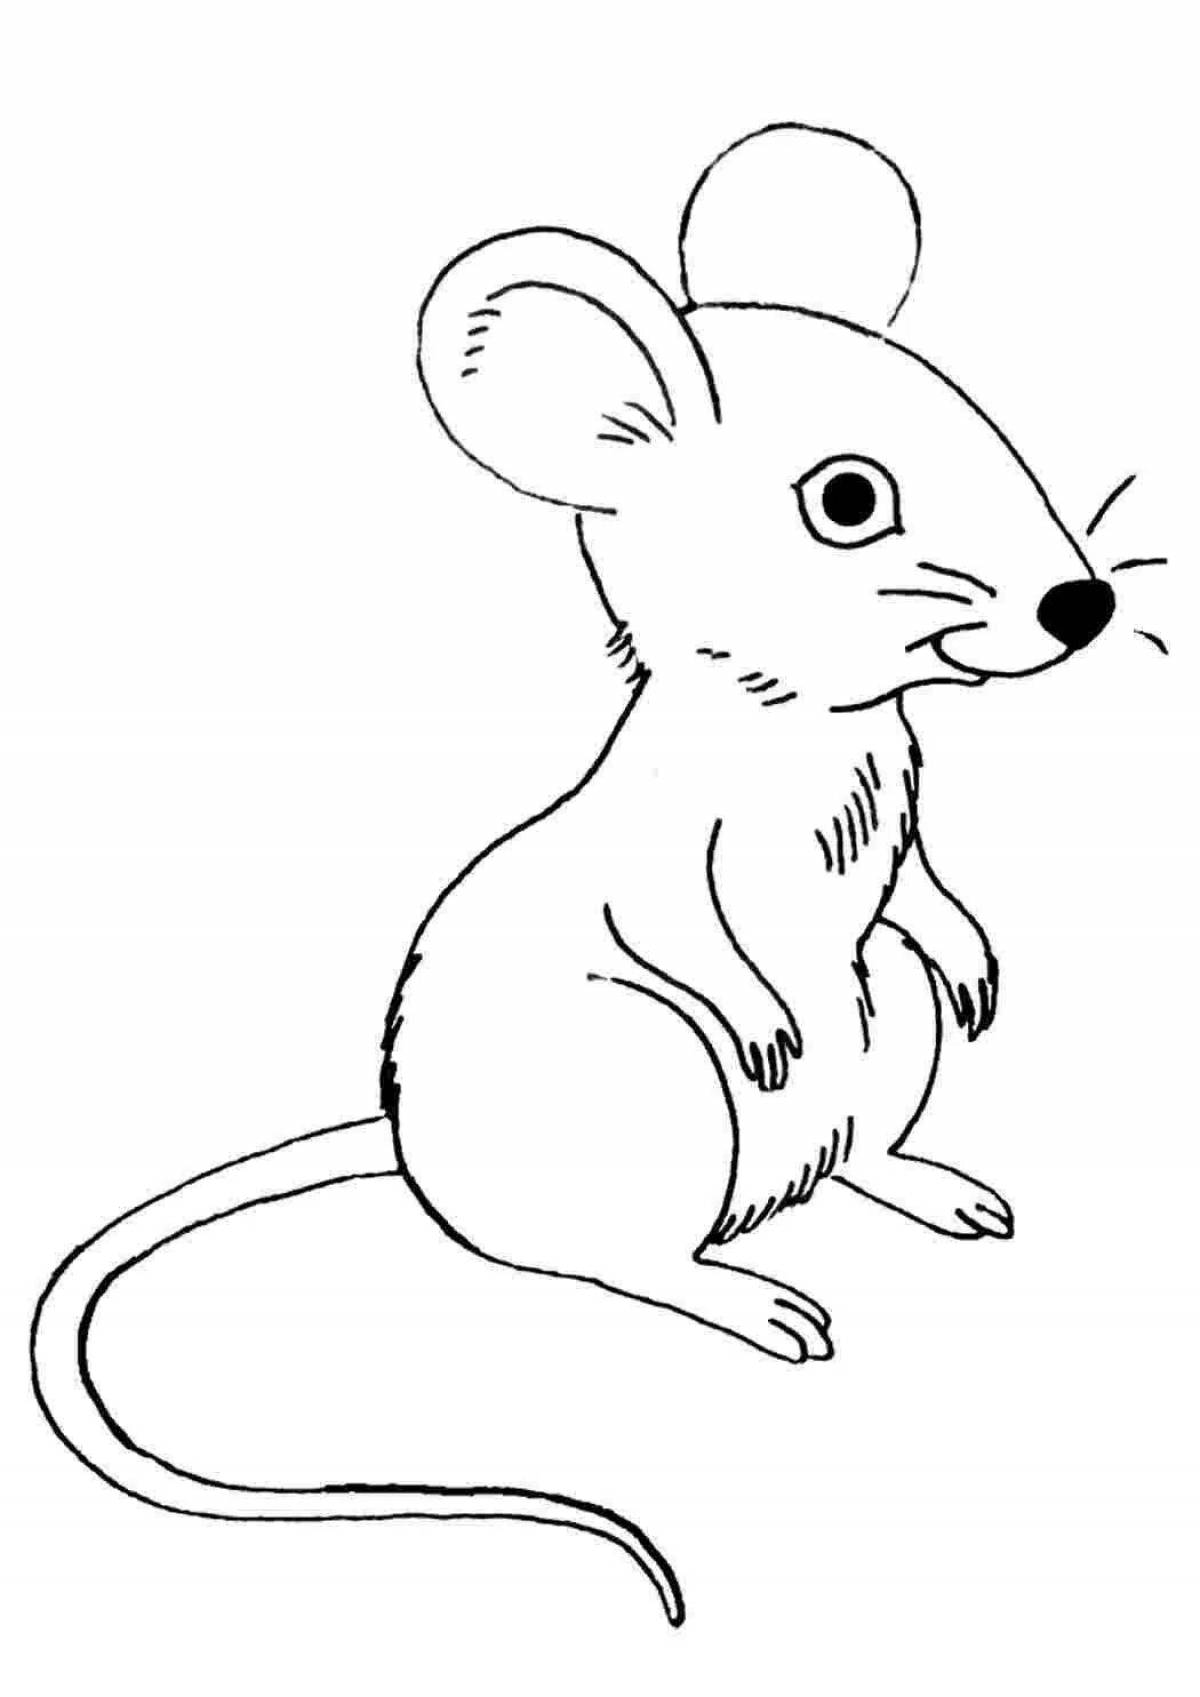 Милая раскраска мышь для детей